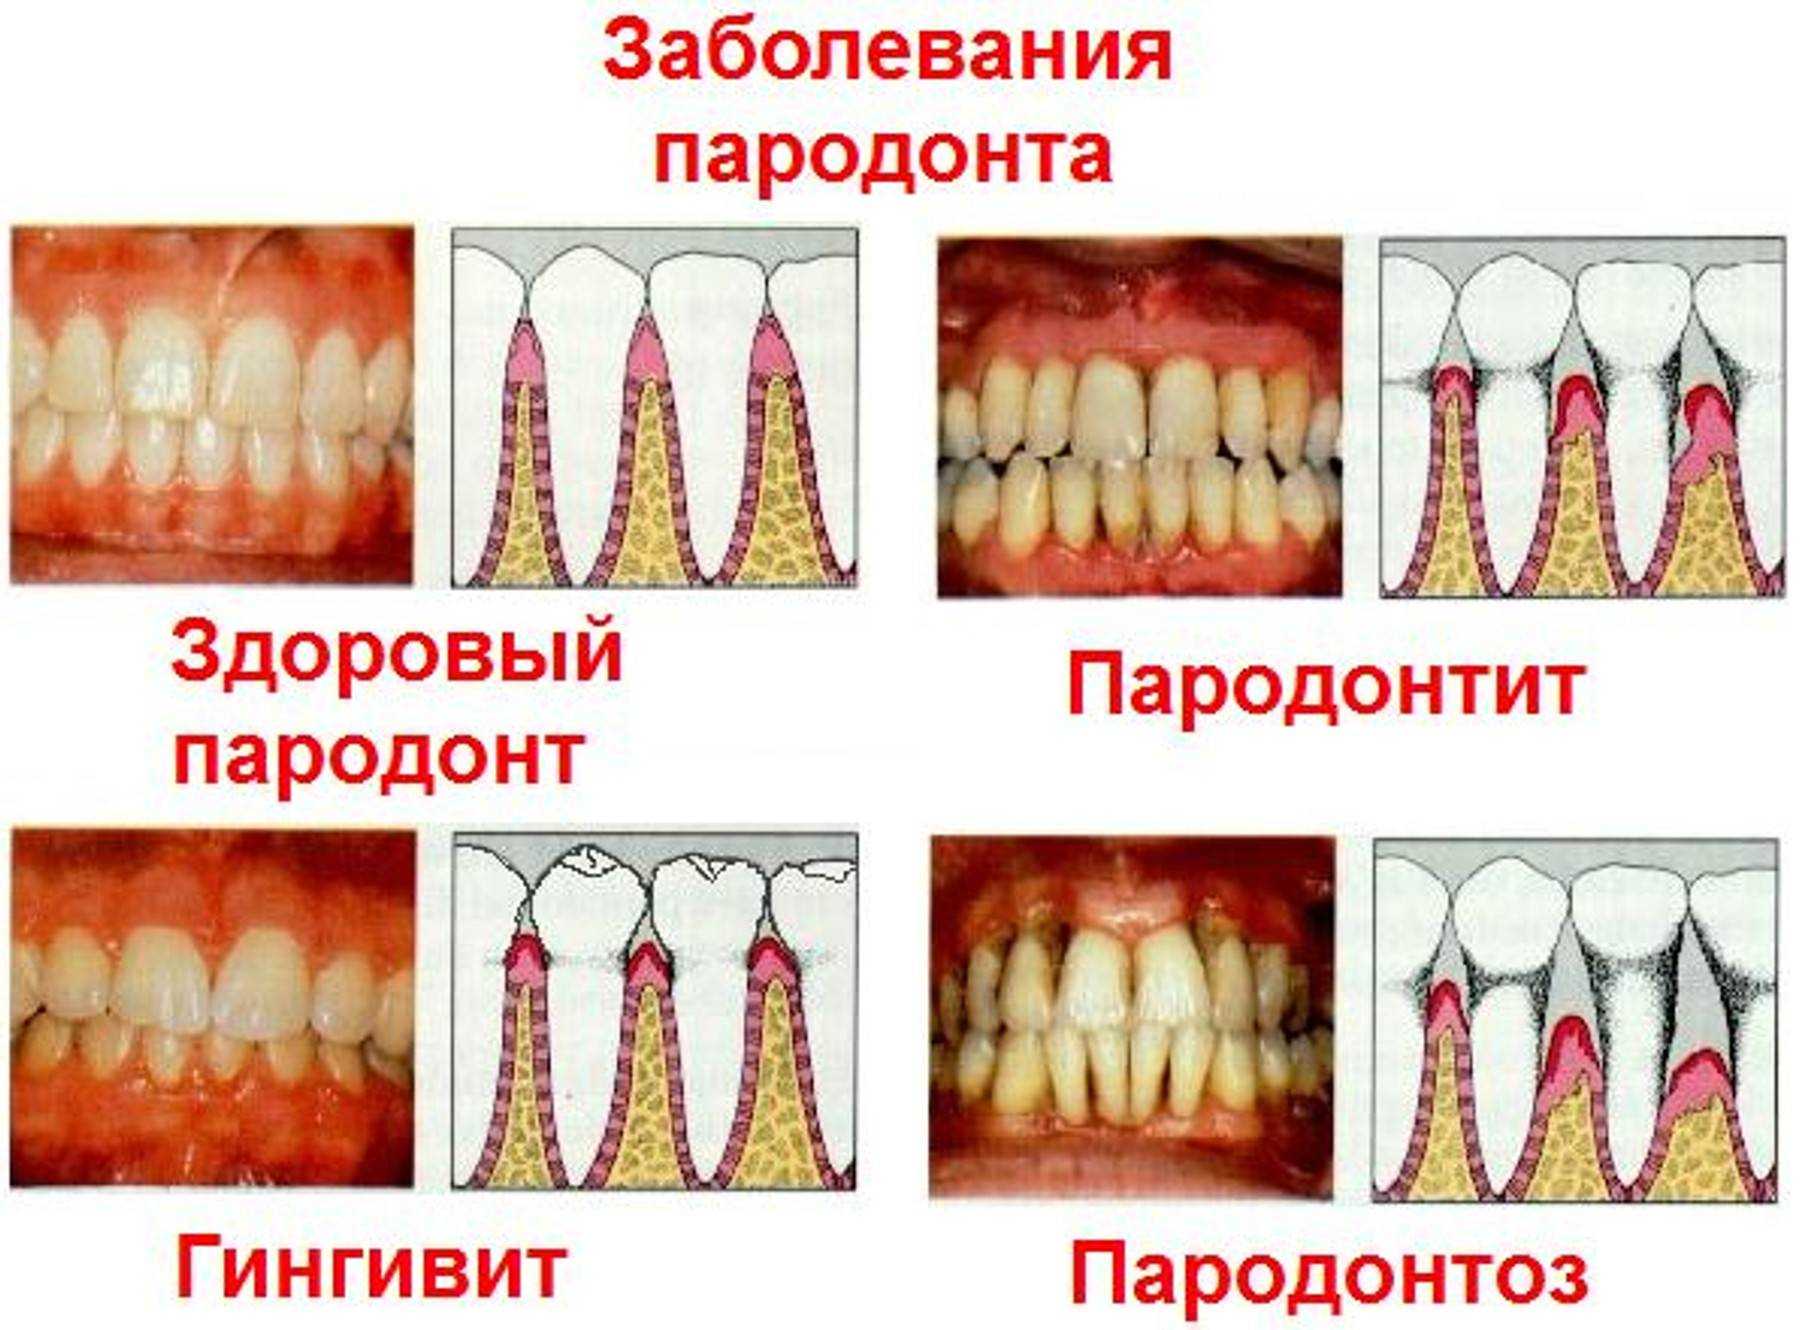 Удаление парадонтозных зубов |